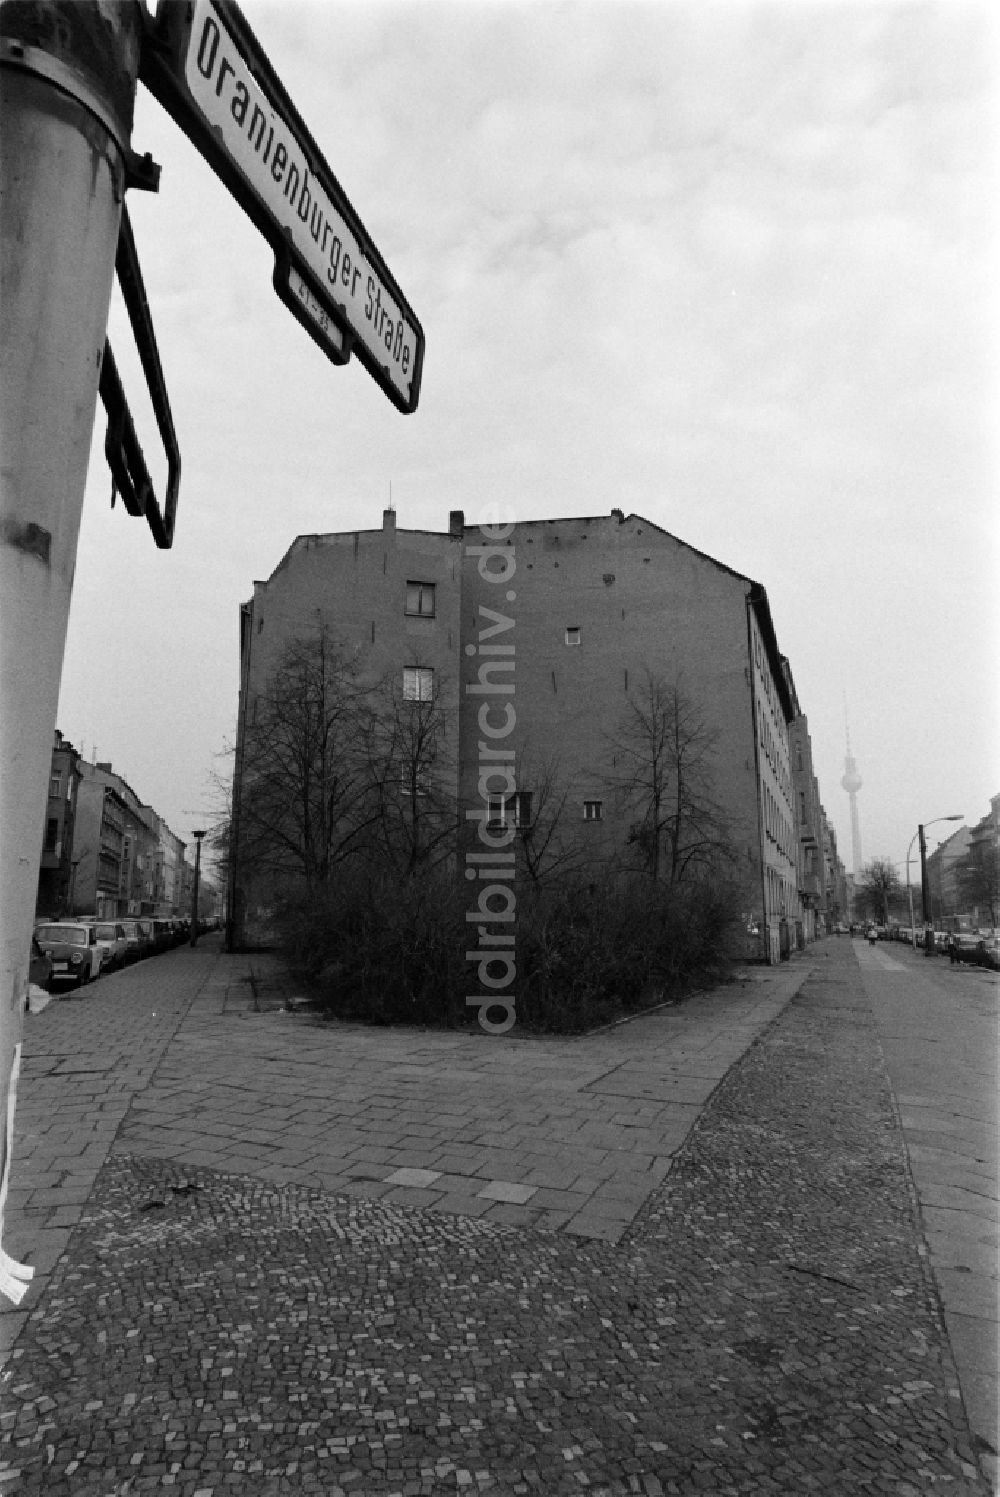 Berlin: Oranienburger Straße in Berlin - Mitte, der ehemaligen Hauptstadt der DDR, Deutsche Demokratische Republik